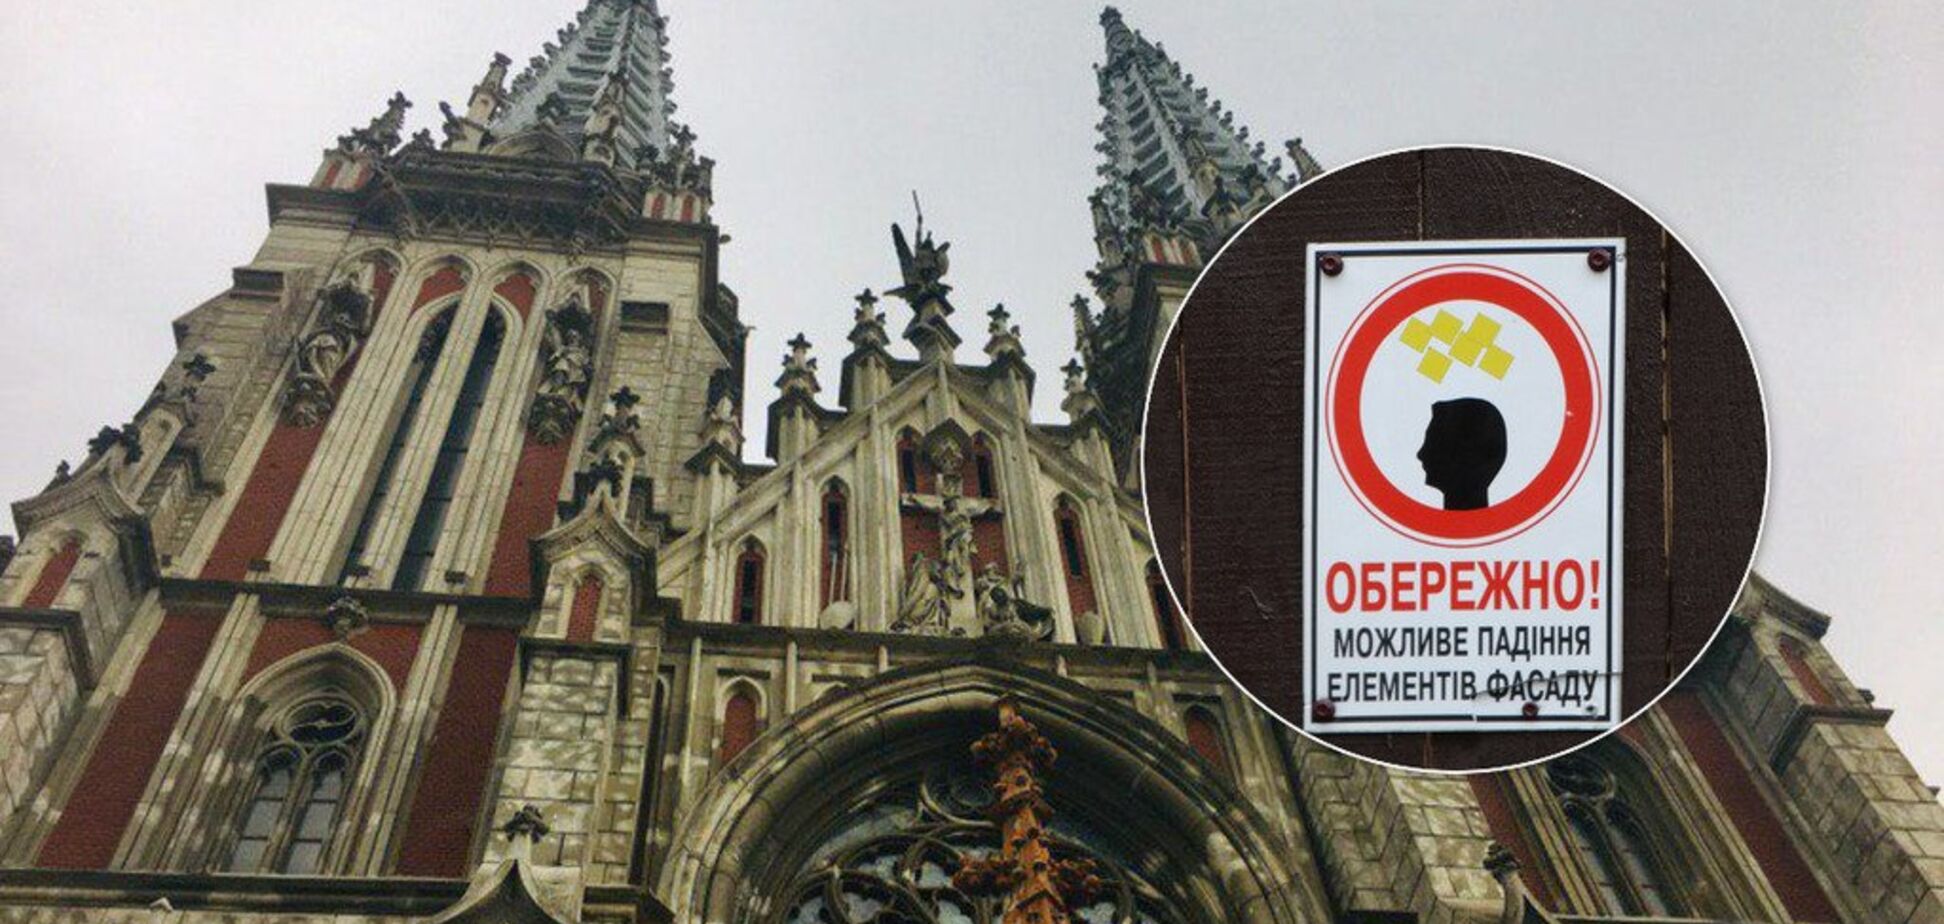 Под присмотром чиновников: уникальный собор Городецкого довели до критического состояния